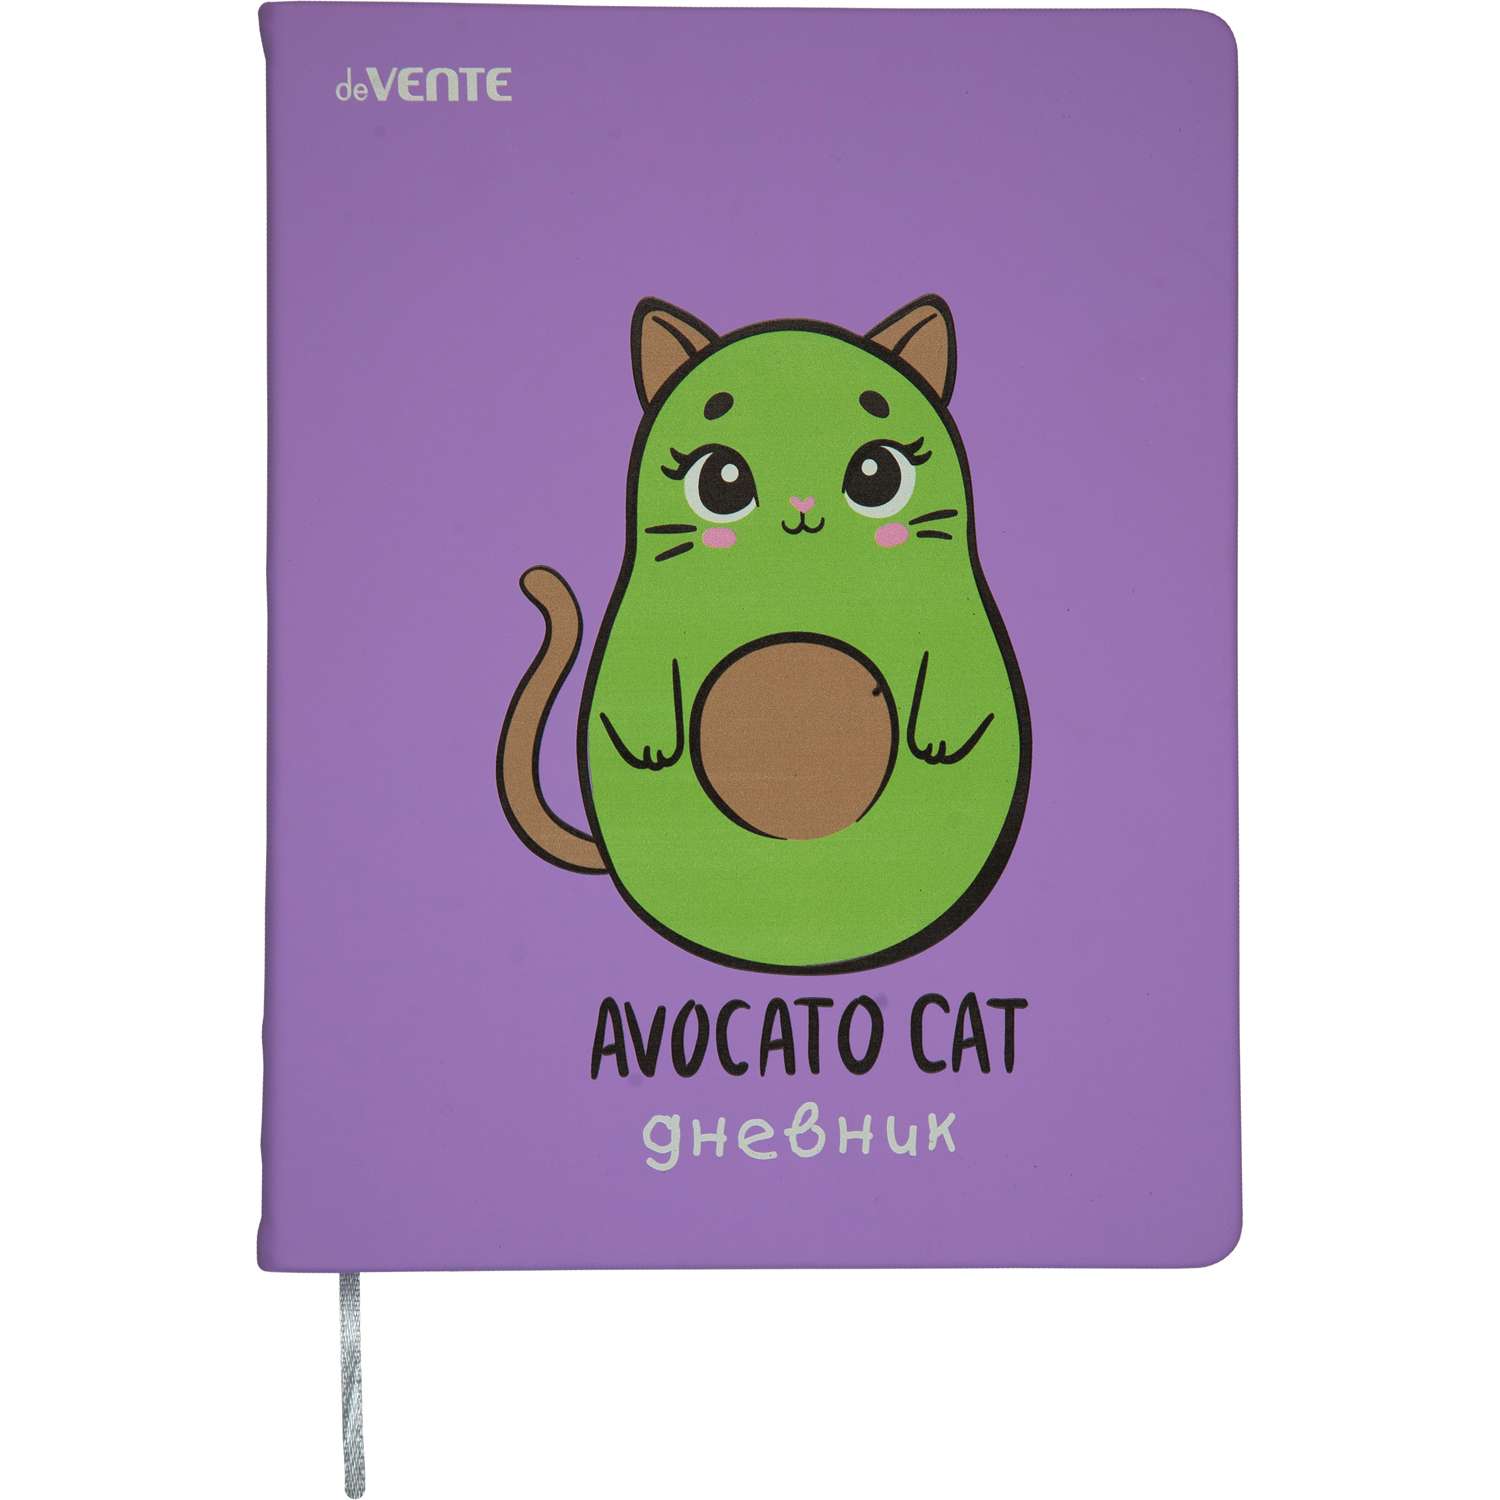 Дневник deVENTE Avocato Cat. твердая обложка - фото 1